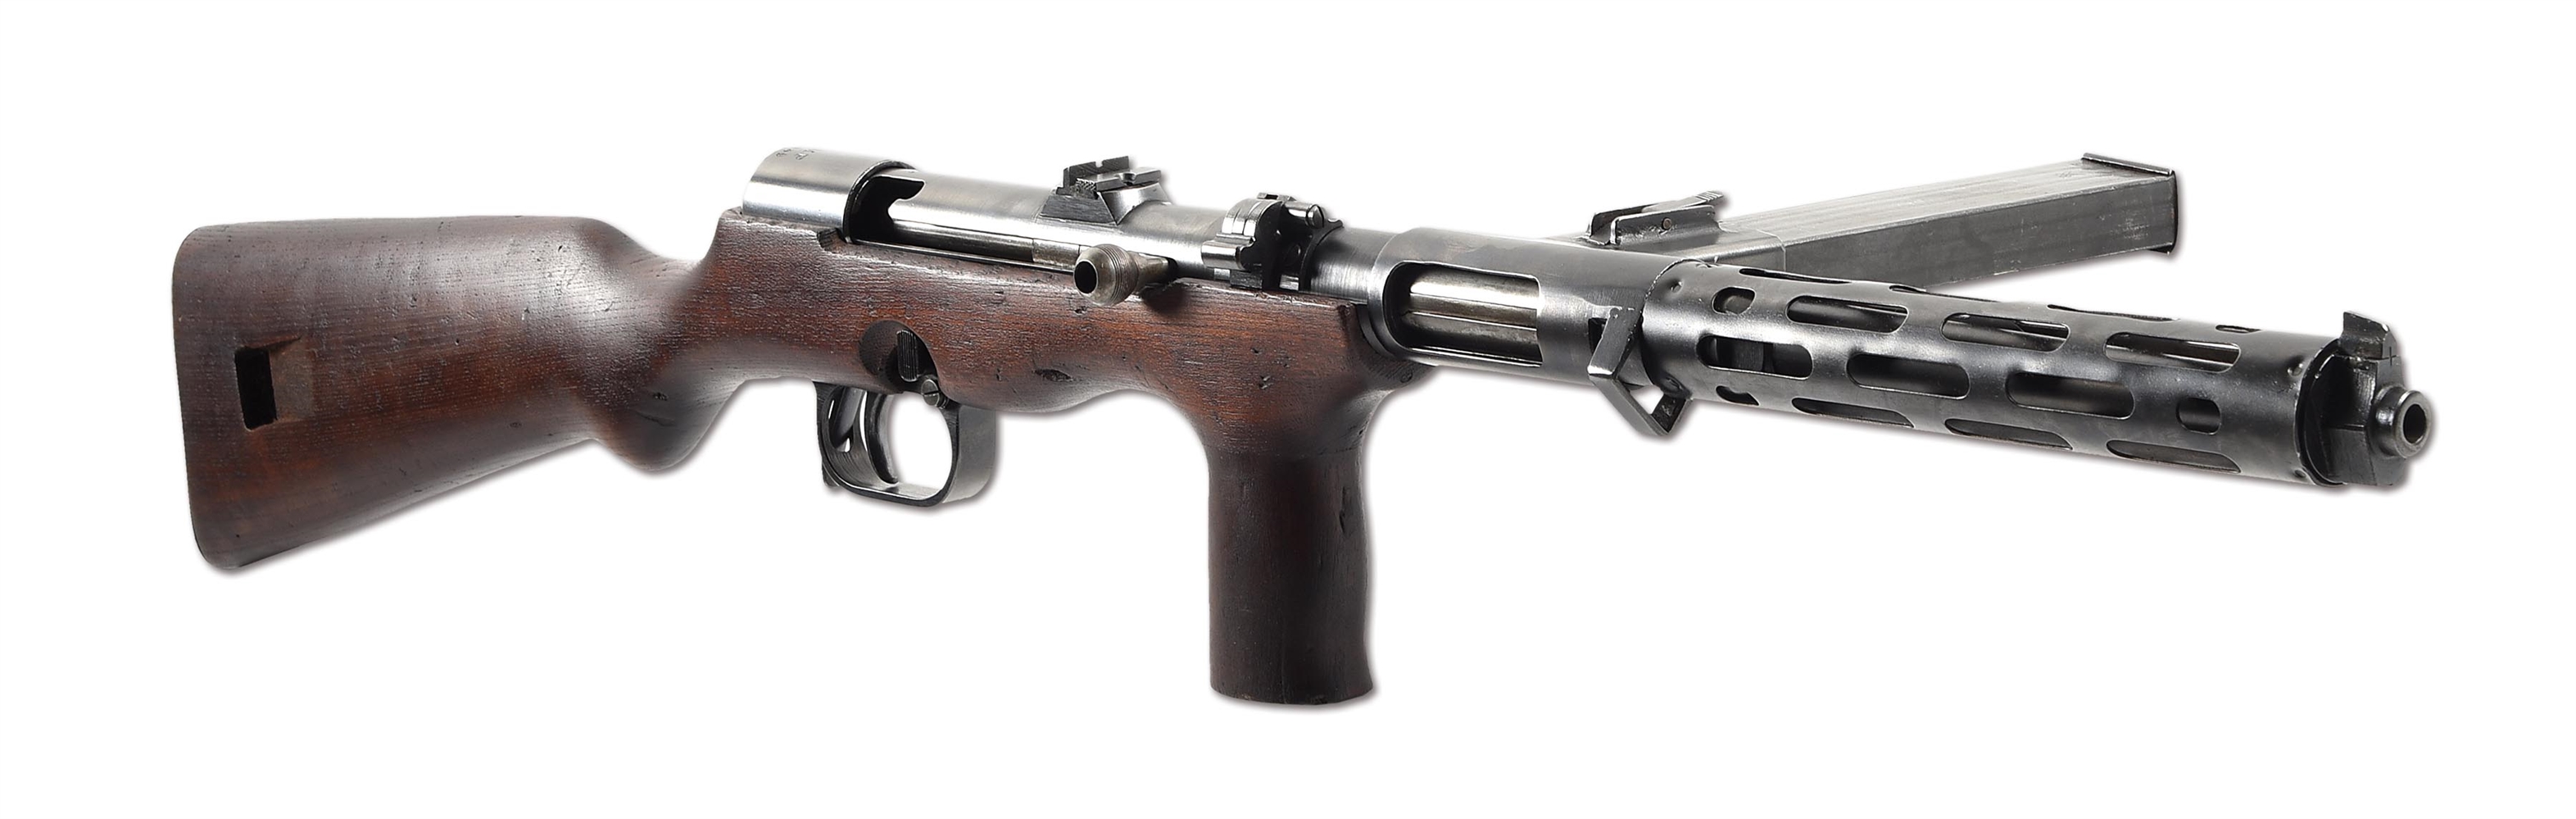 (N) GERMAN WORLD WAR II ERMA EMP MACHINE GUN WITH ORIGINAL AMNESTY & STATE REGISTRATION PAPERWORK (CURIO & RELIC).